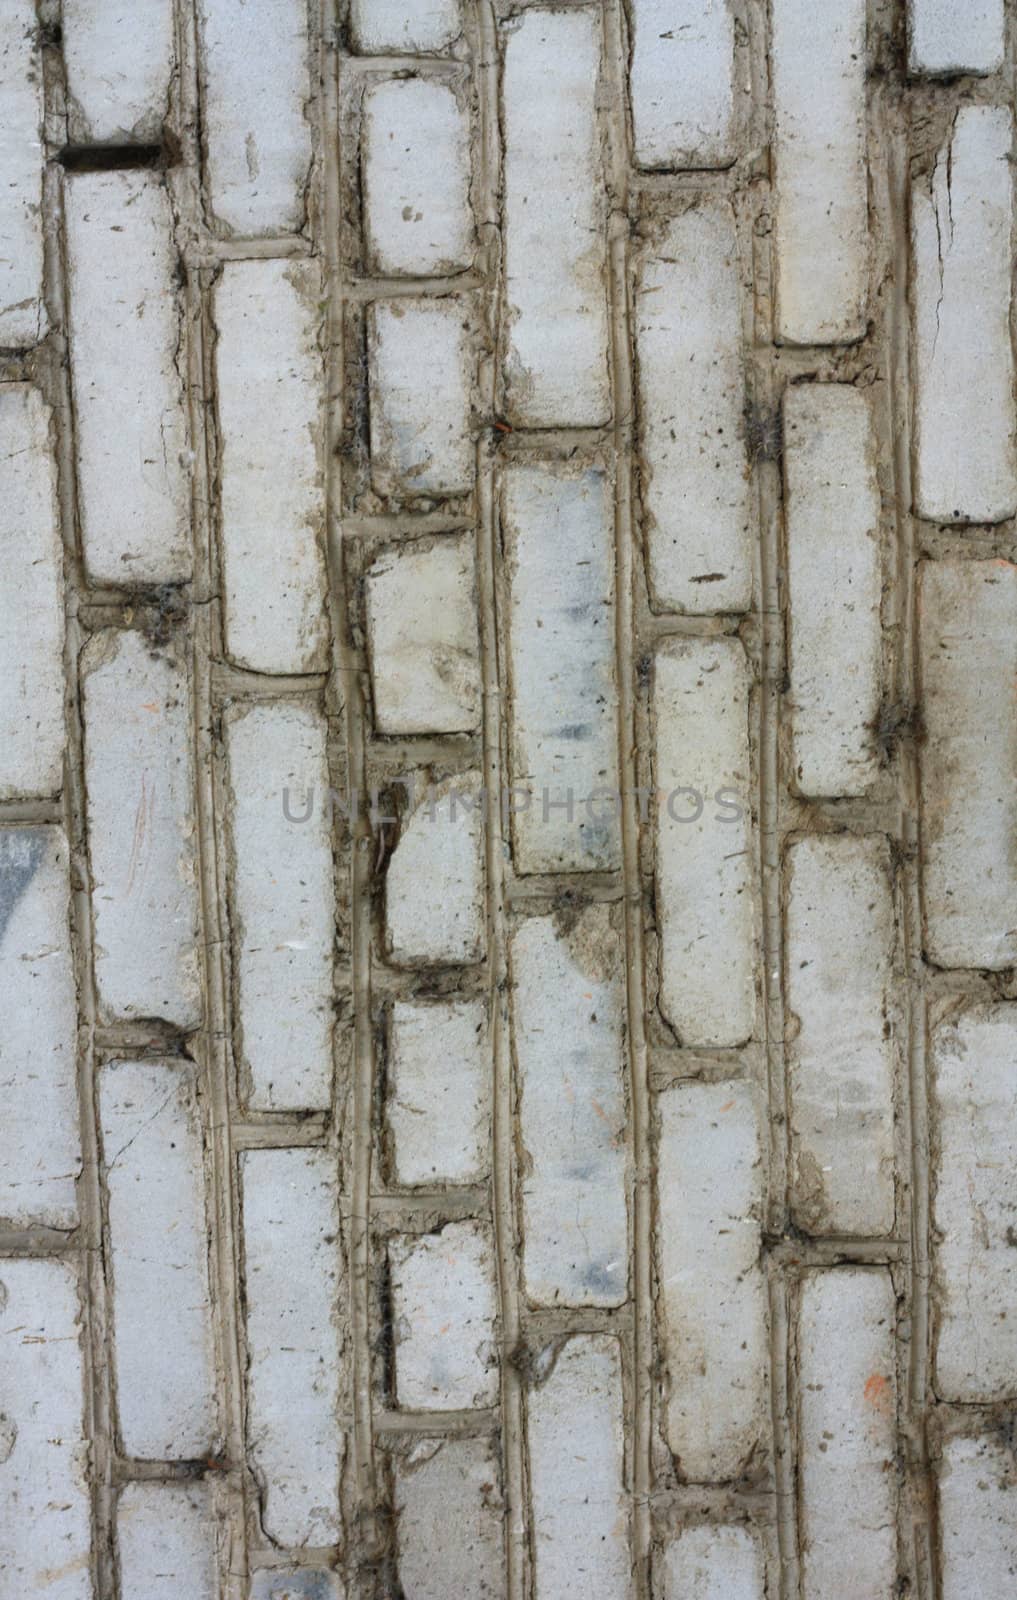 Hollow Brick Texture  by schankz